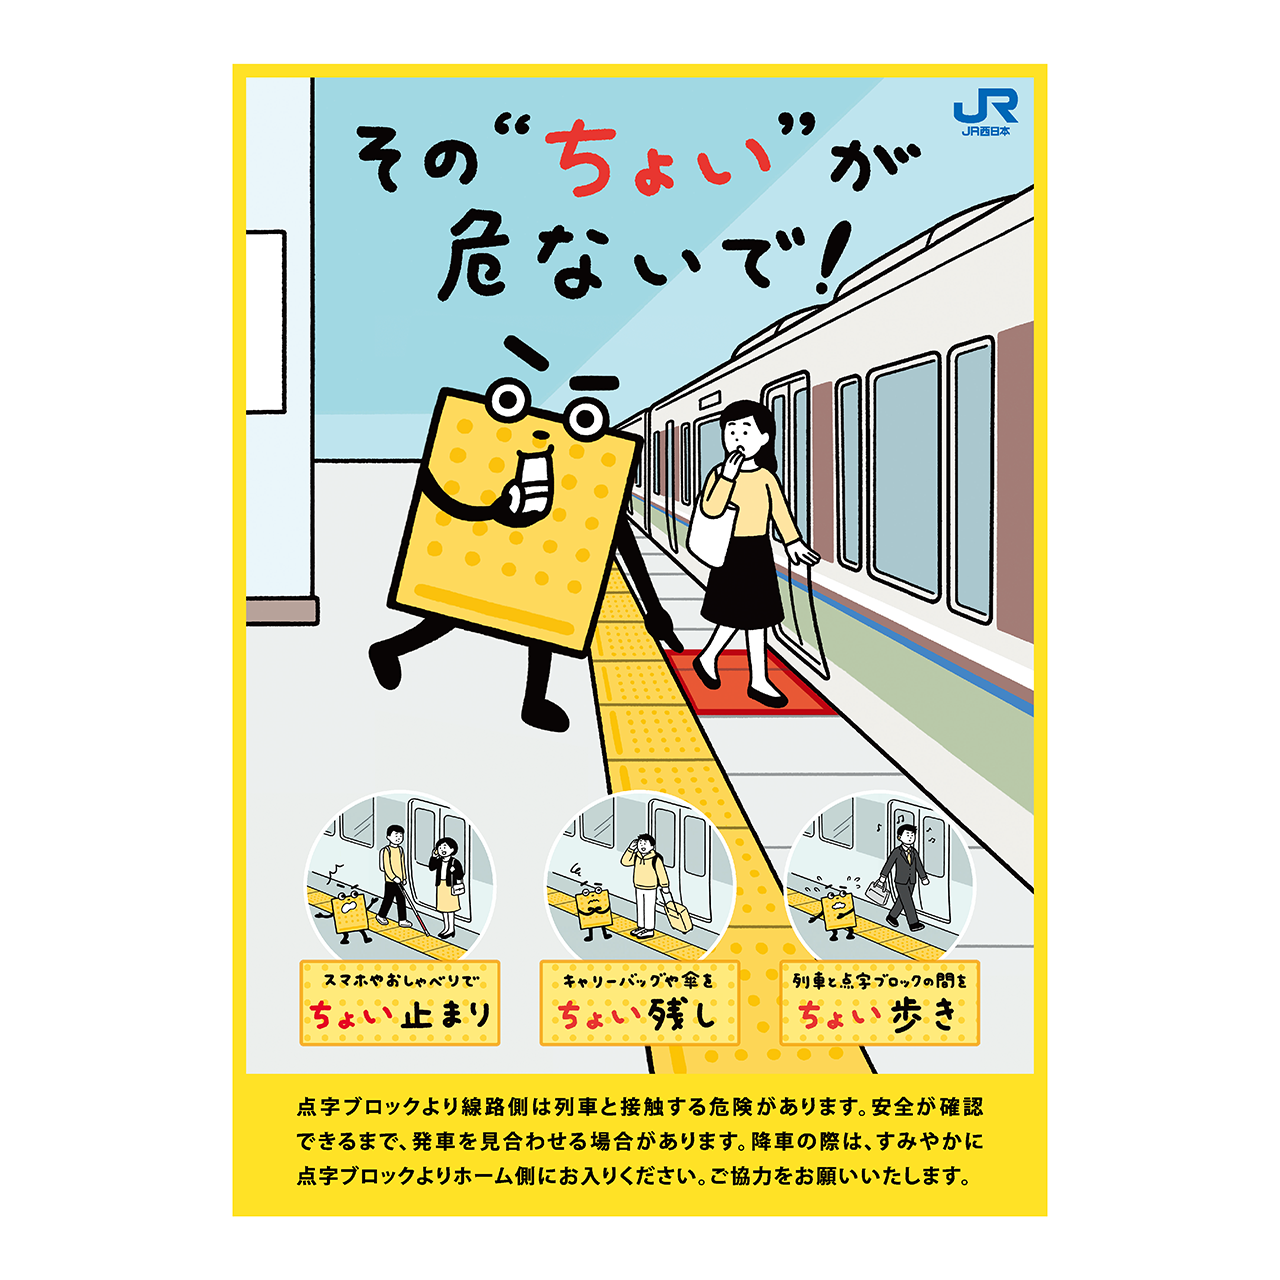 くにともゆかり Illustration Jr西日本 点字ブロック マナーポスター のイラストを担当しました